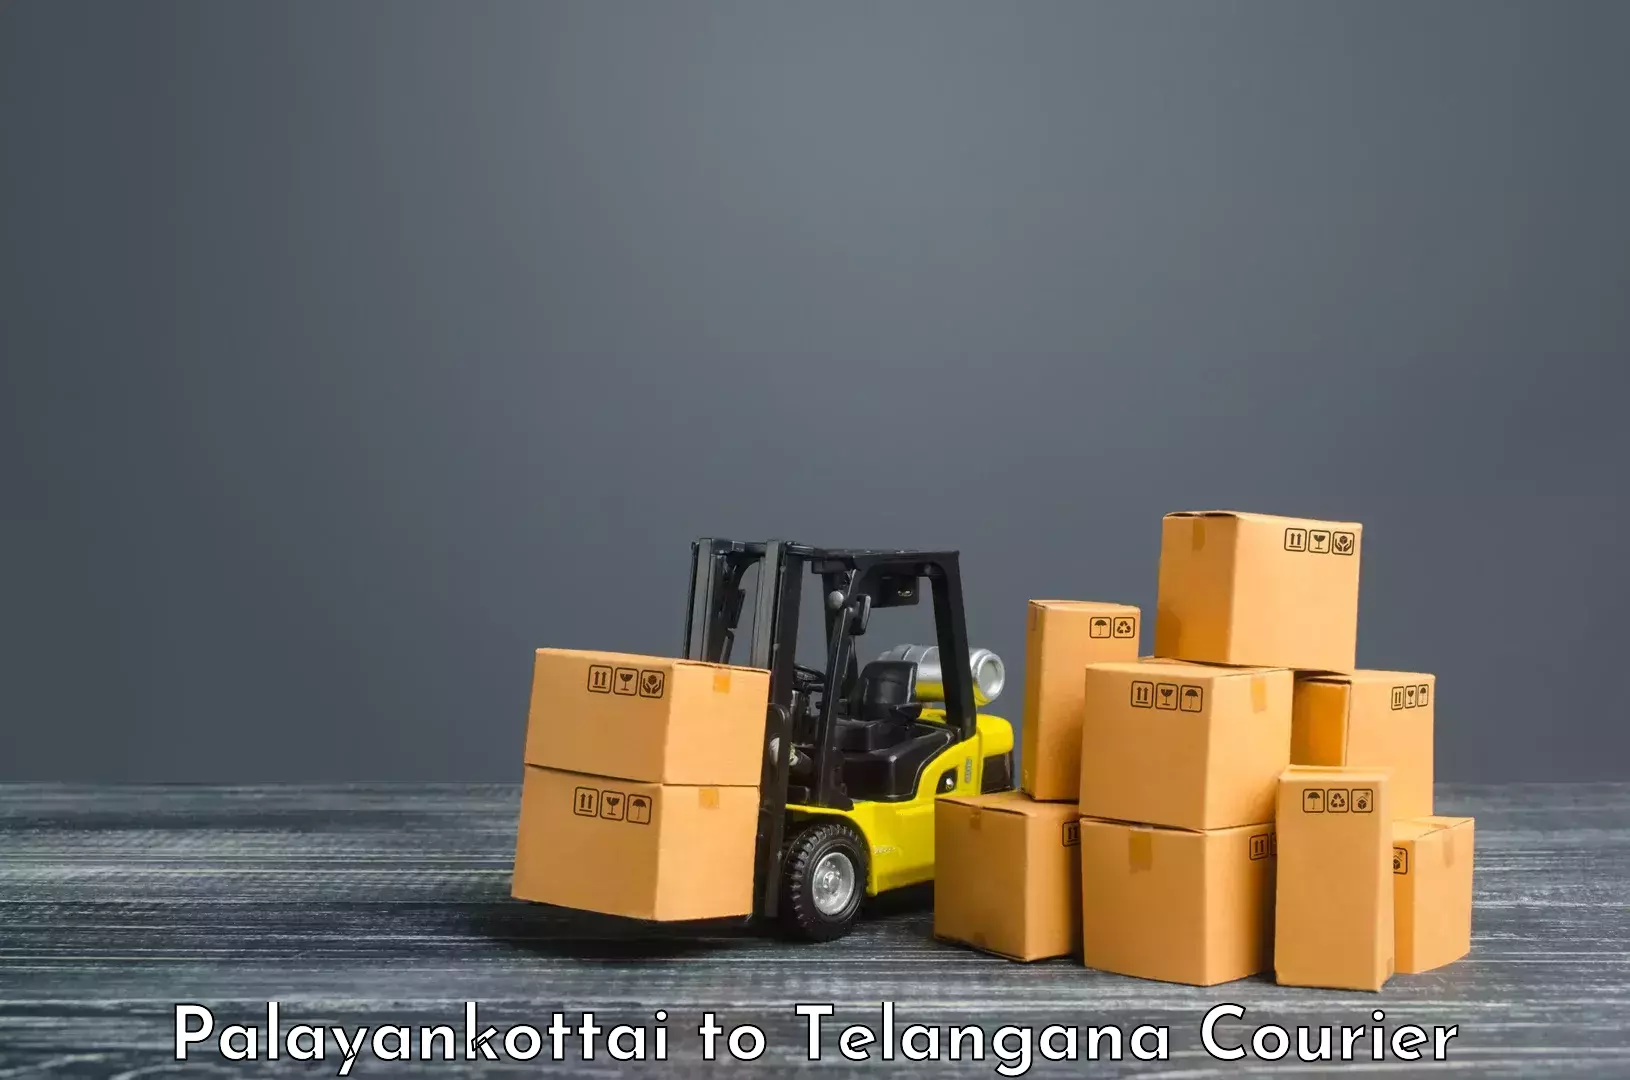 Smart courier technologies Palayankottai to Madhavaram